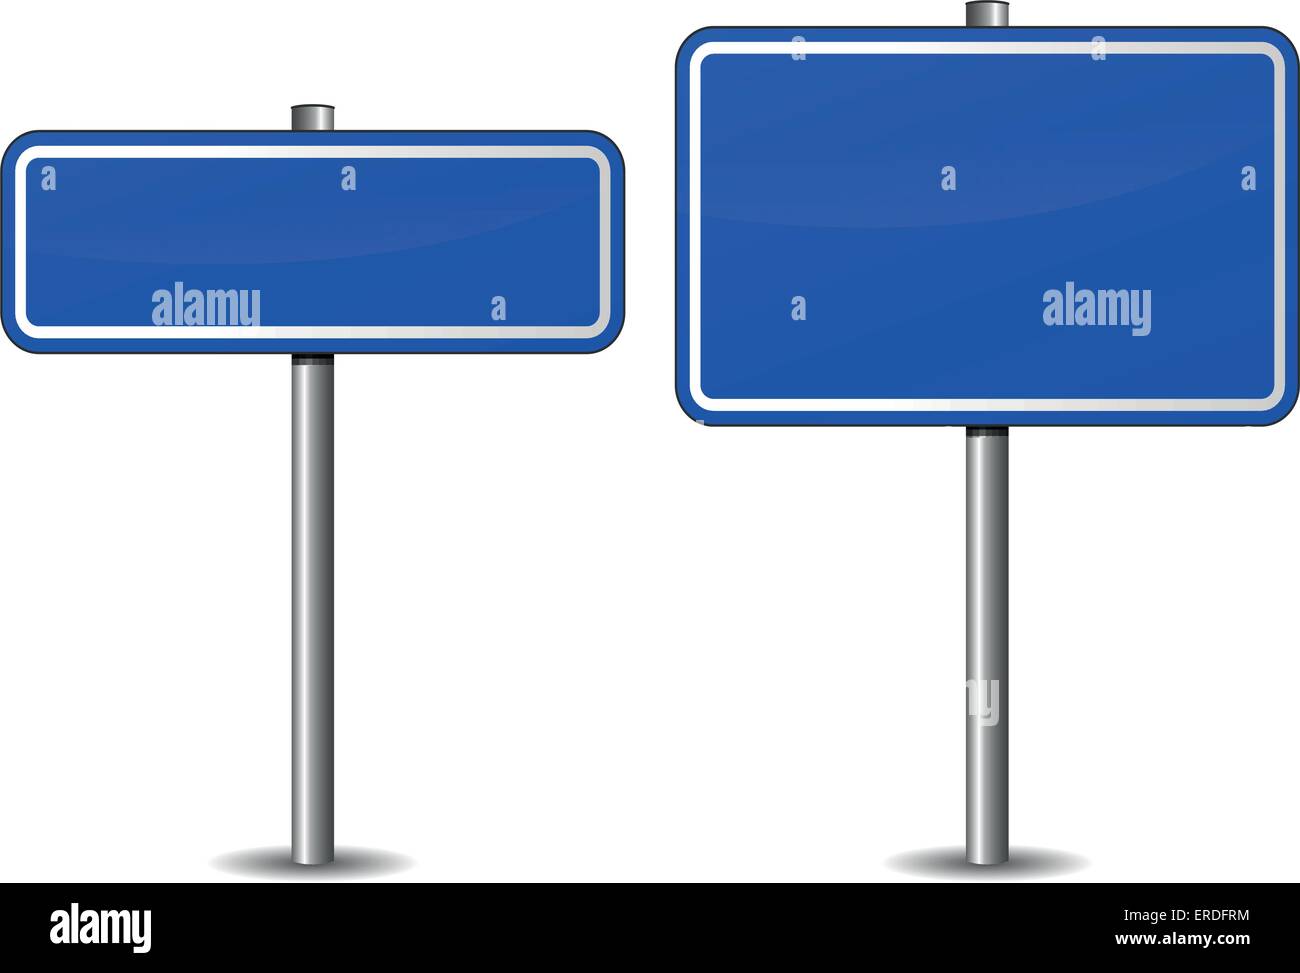 Ilustración vectorial de señales de carretera azul en blanco sobre fondo blanco. Ilustración del Vector